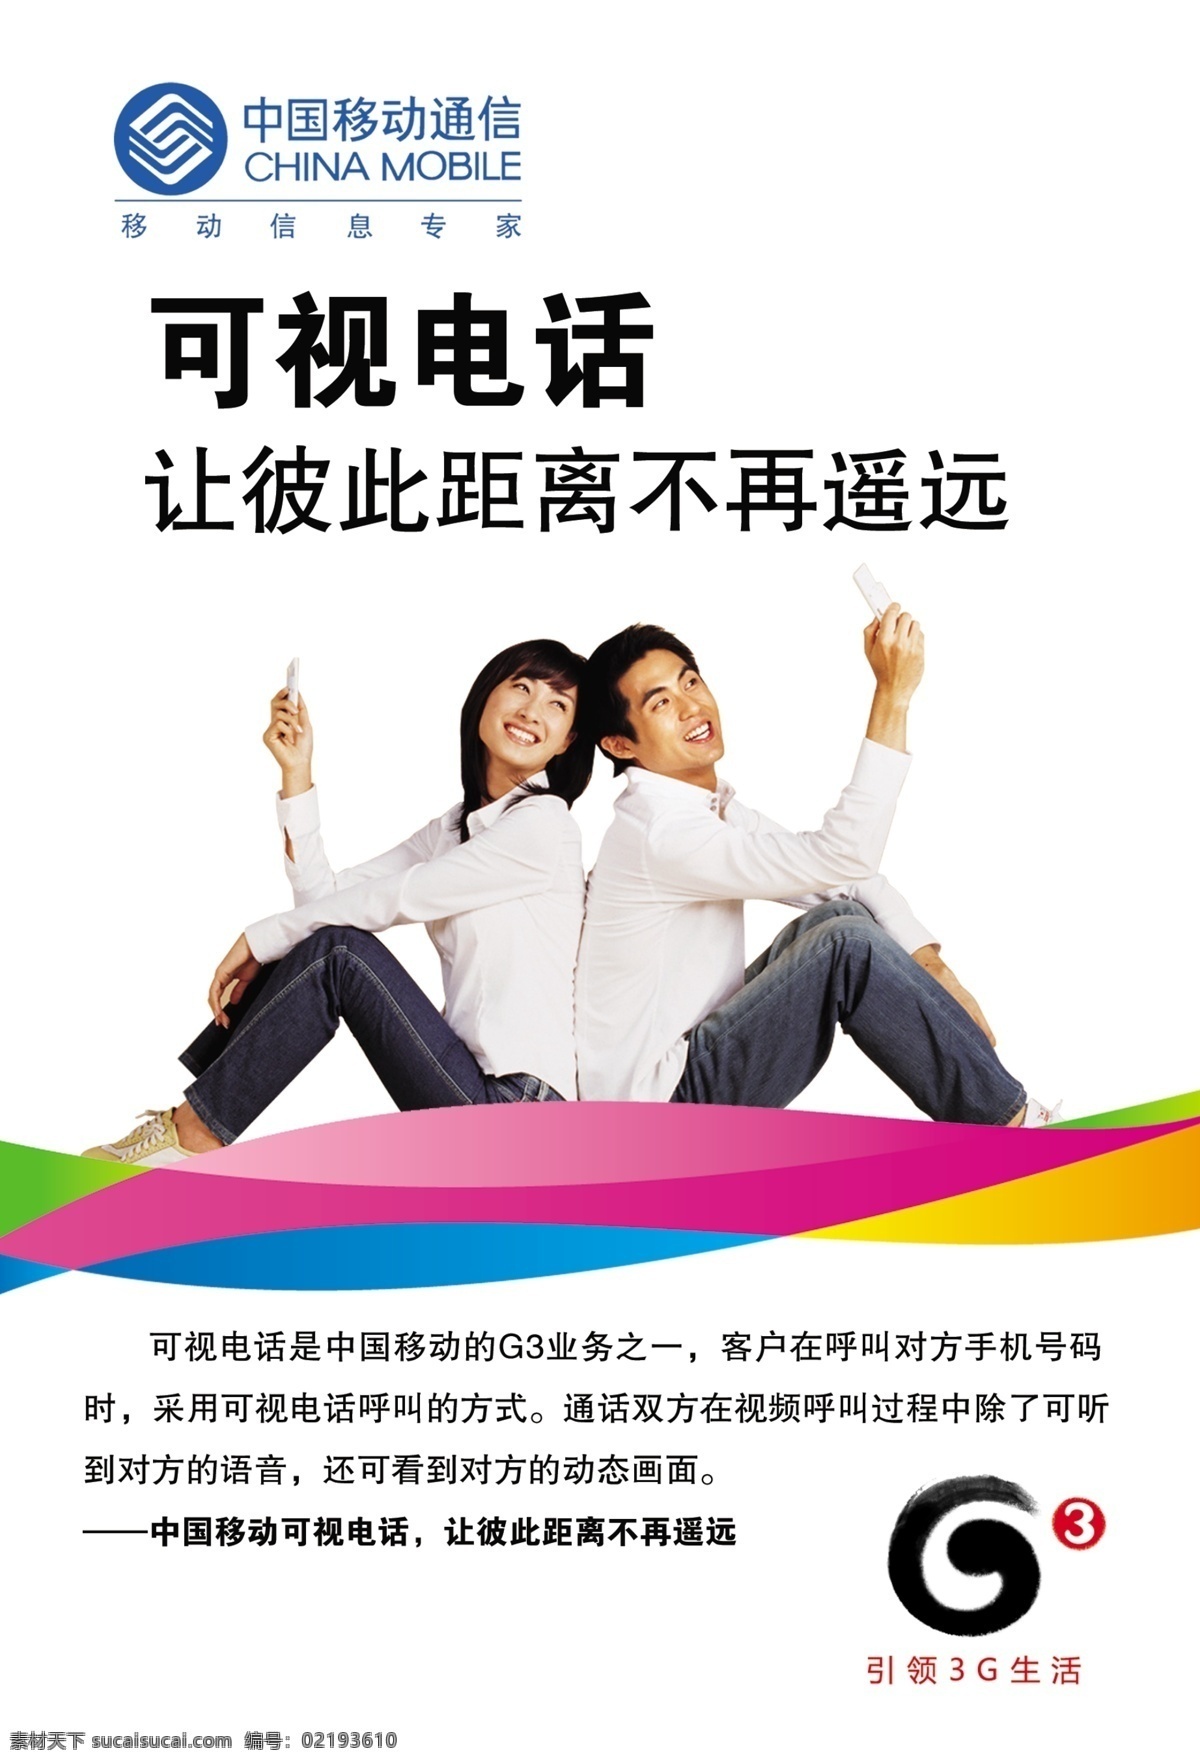 3g 电话 电视 广告设计模板 美女 情侣 帅哥 中国移动 可视电话 中国 移动 可视 源文件库 其他海报设计